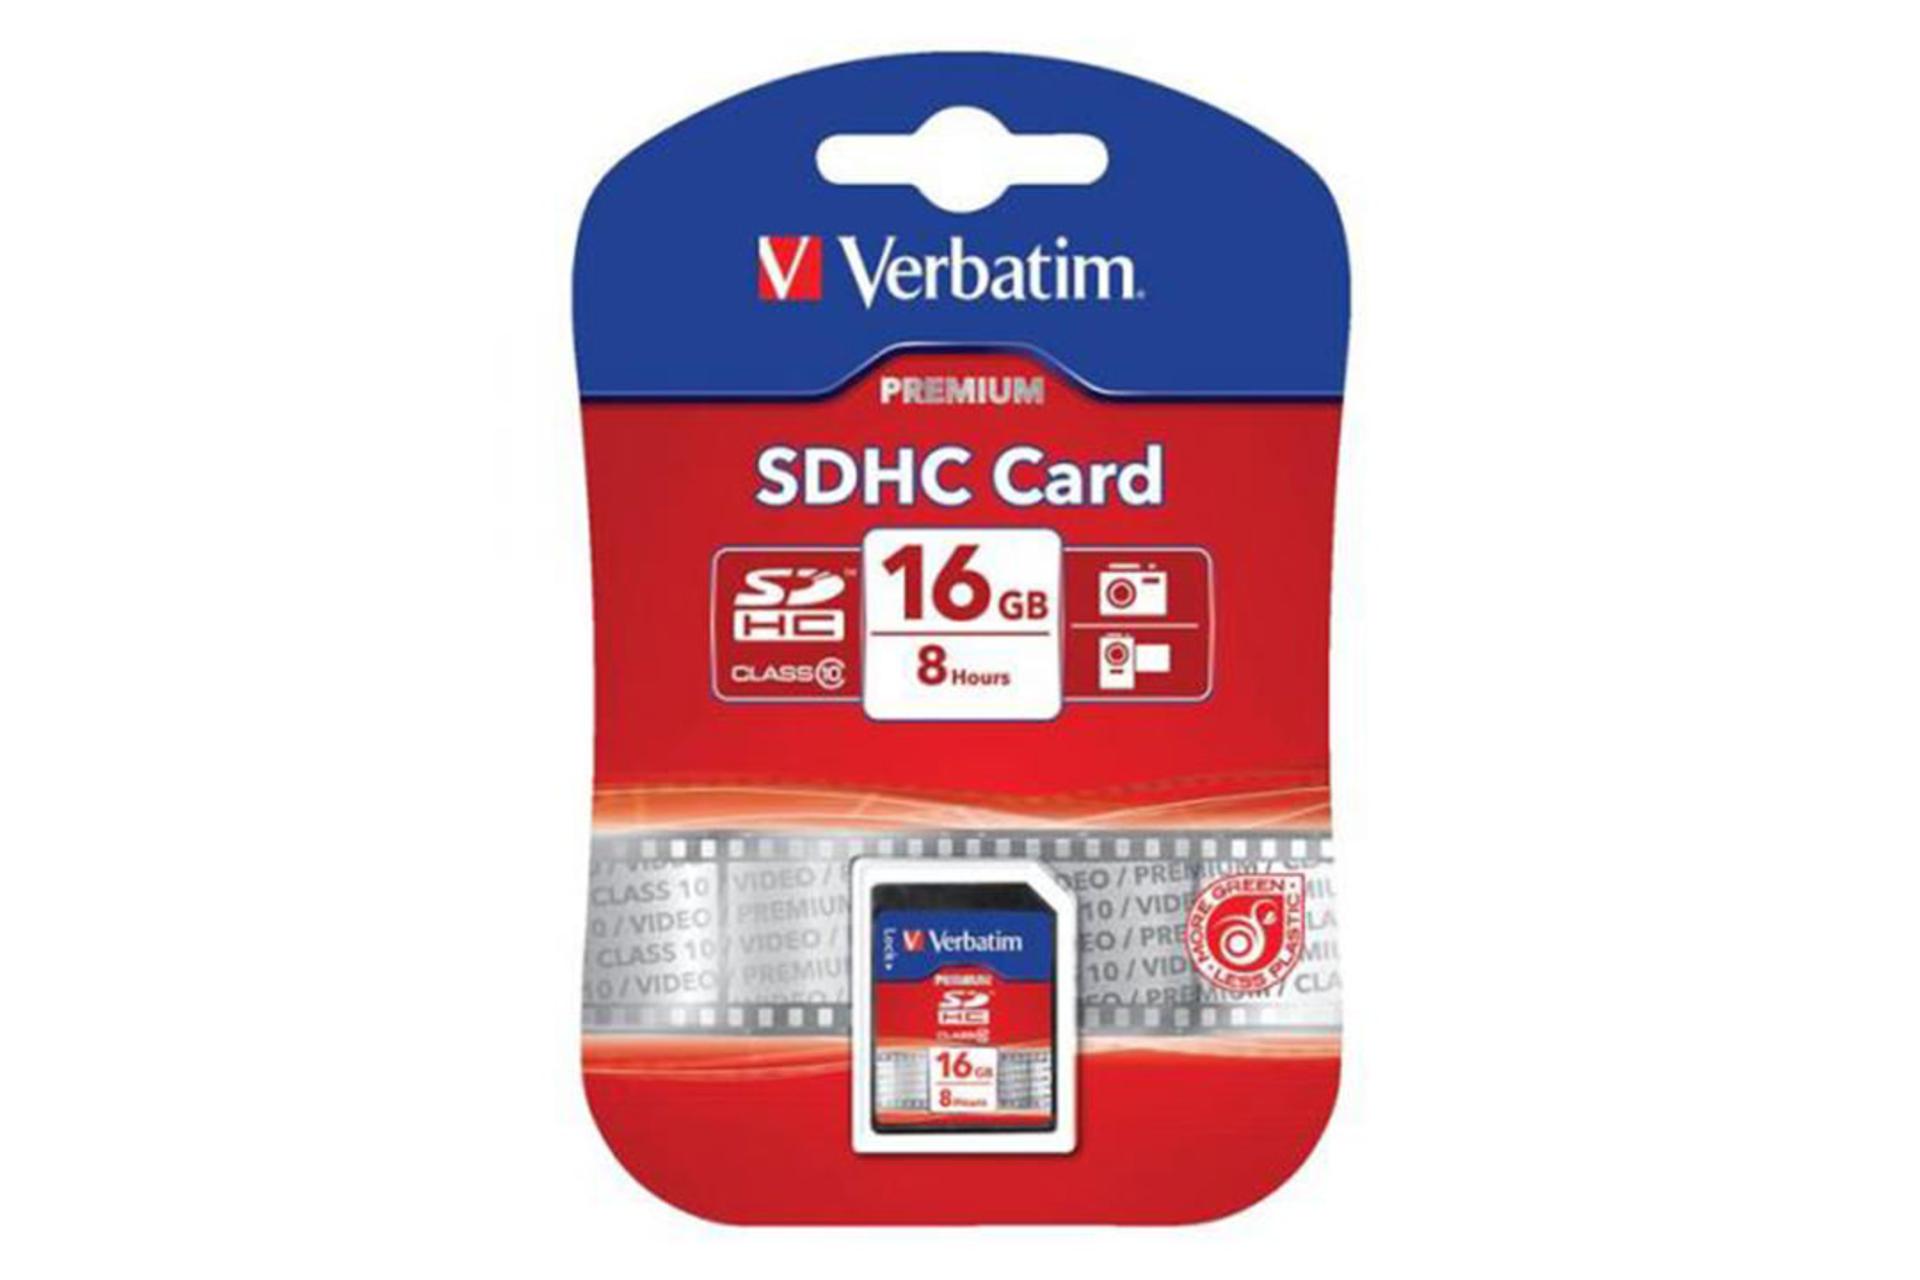 Verbatim Premium SDHC Class 10 16GB